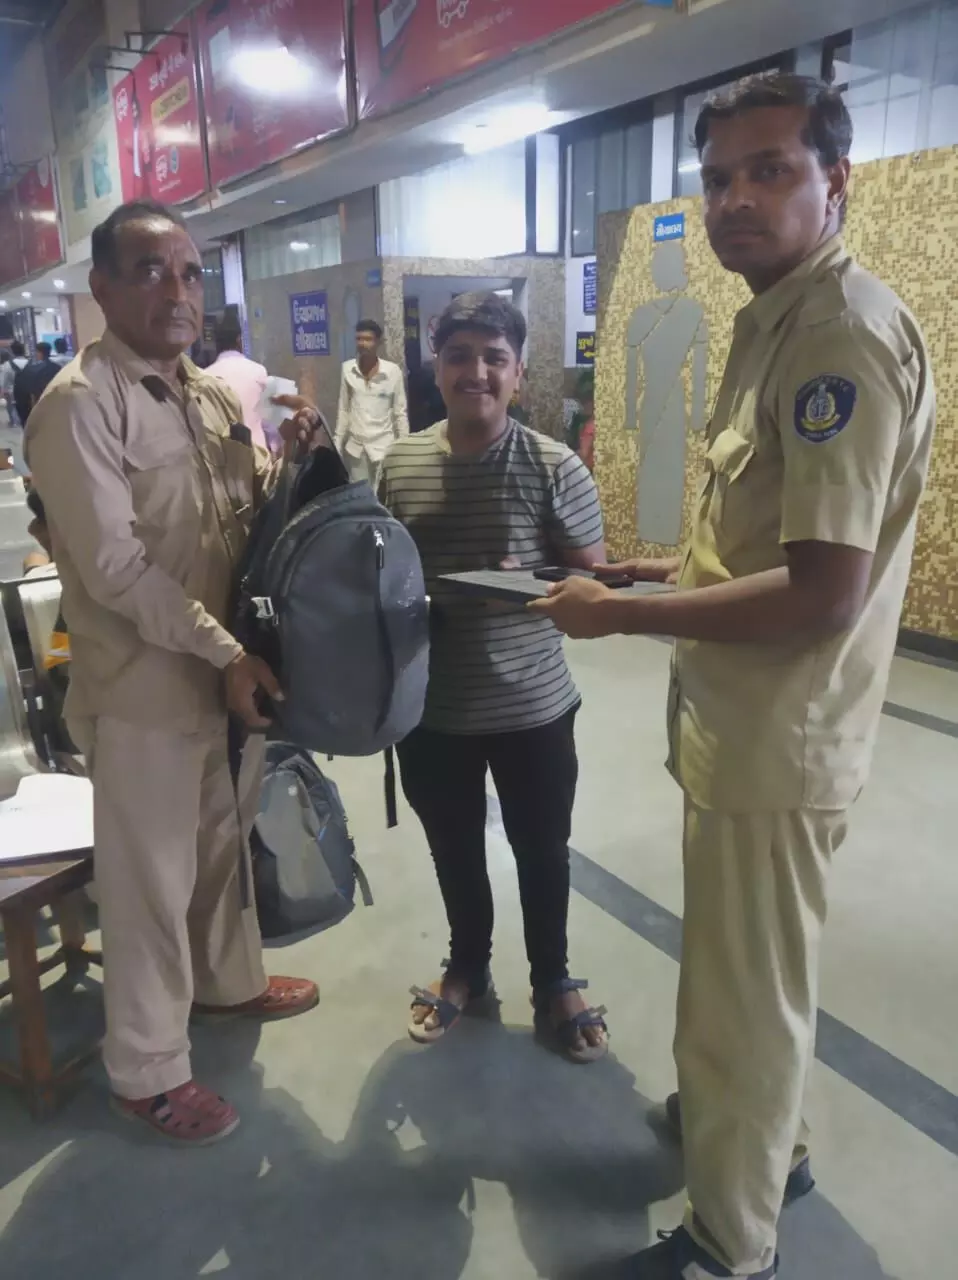 ભાવનગર : એસટી બસના કંડક્ટર-ડ્રાઇવરે બેગ ભૂલી ગયેલા મુસાફરને રૂ. 90 હજારનો સરસામાન પરત સોંપી ઈમાનદારી દાખવી